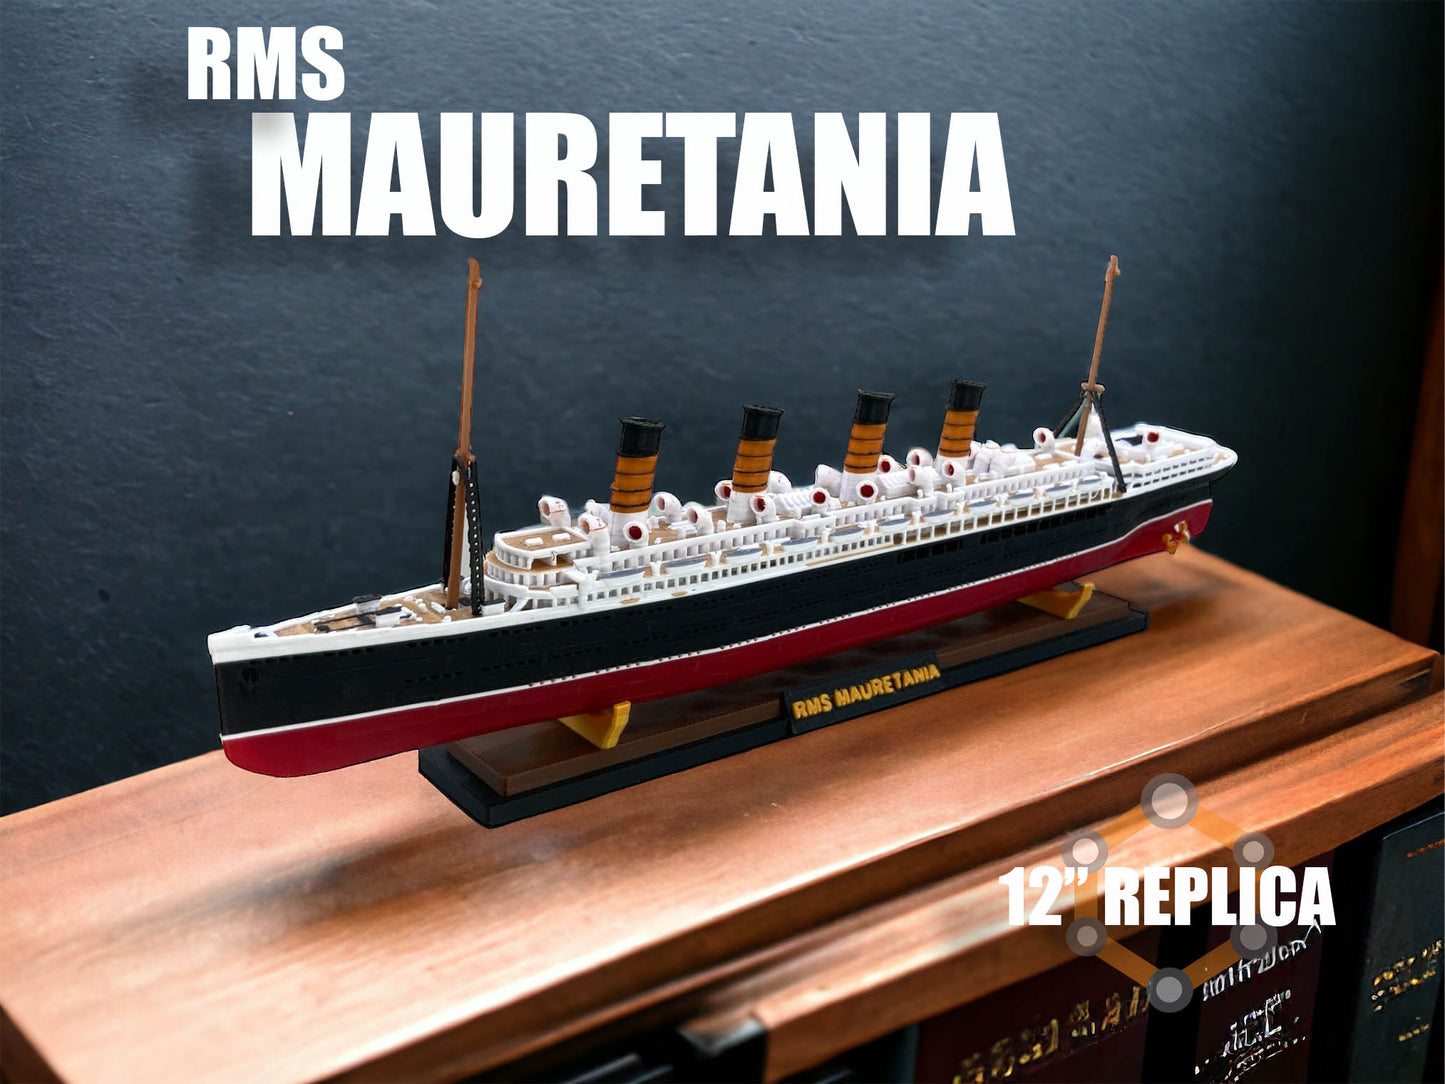 12" RMS Mauretania Replica